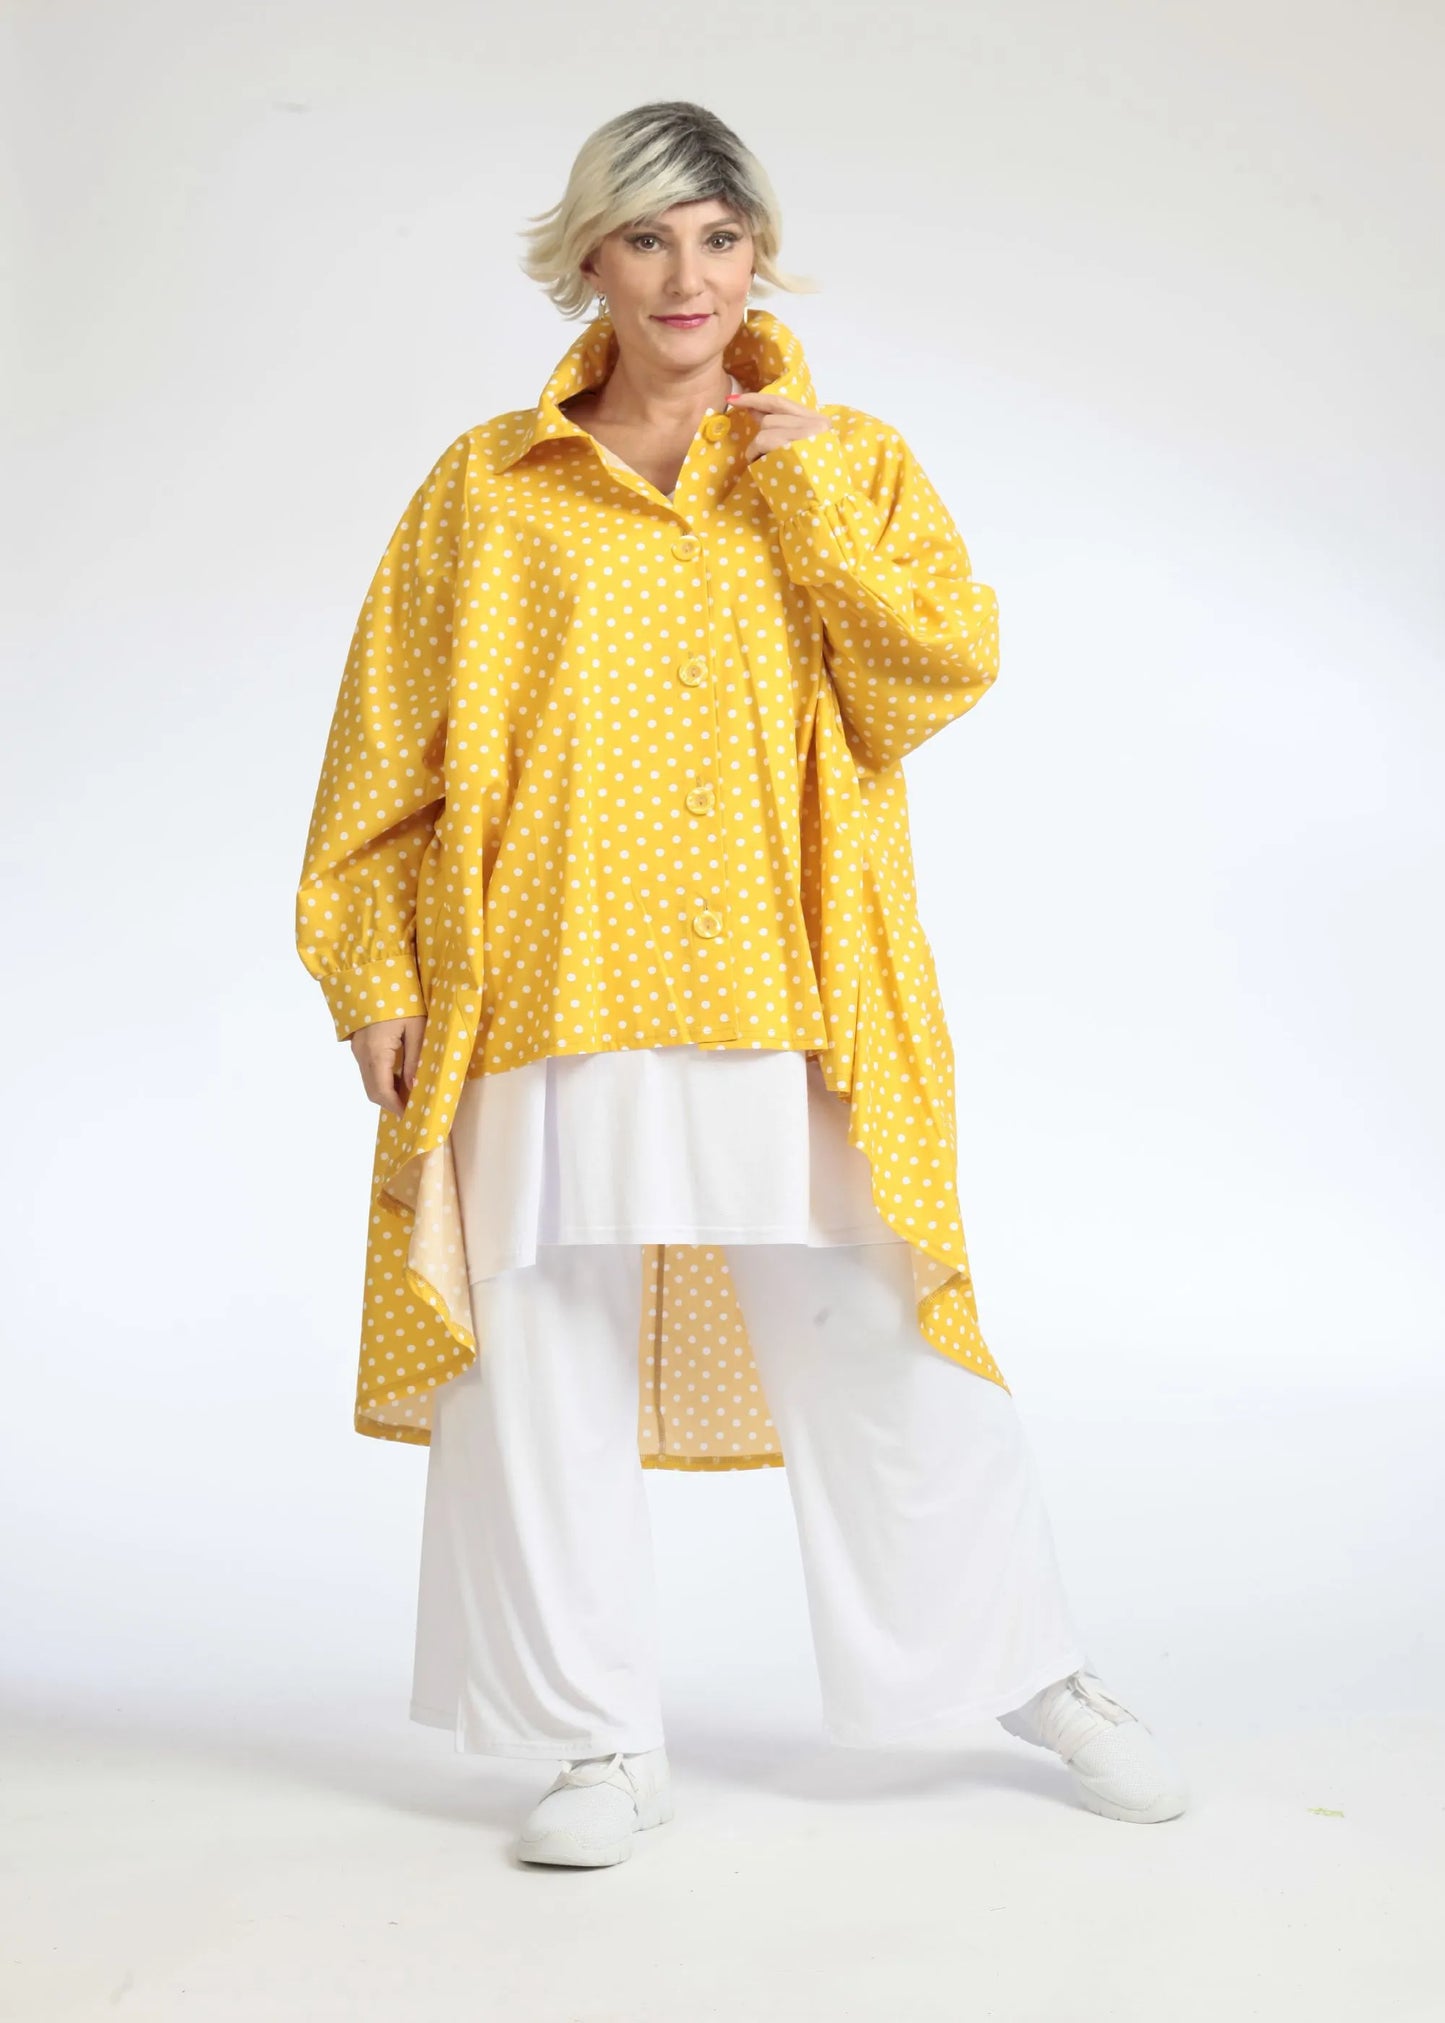 Sommer Bluse in Vokuhila Form aus glatter Popeline Qualität, Freya in Gelb-Weiß